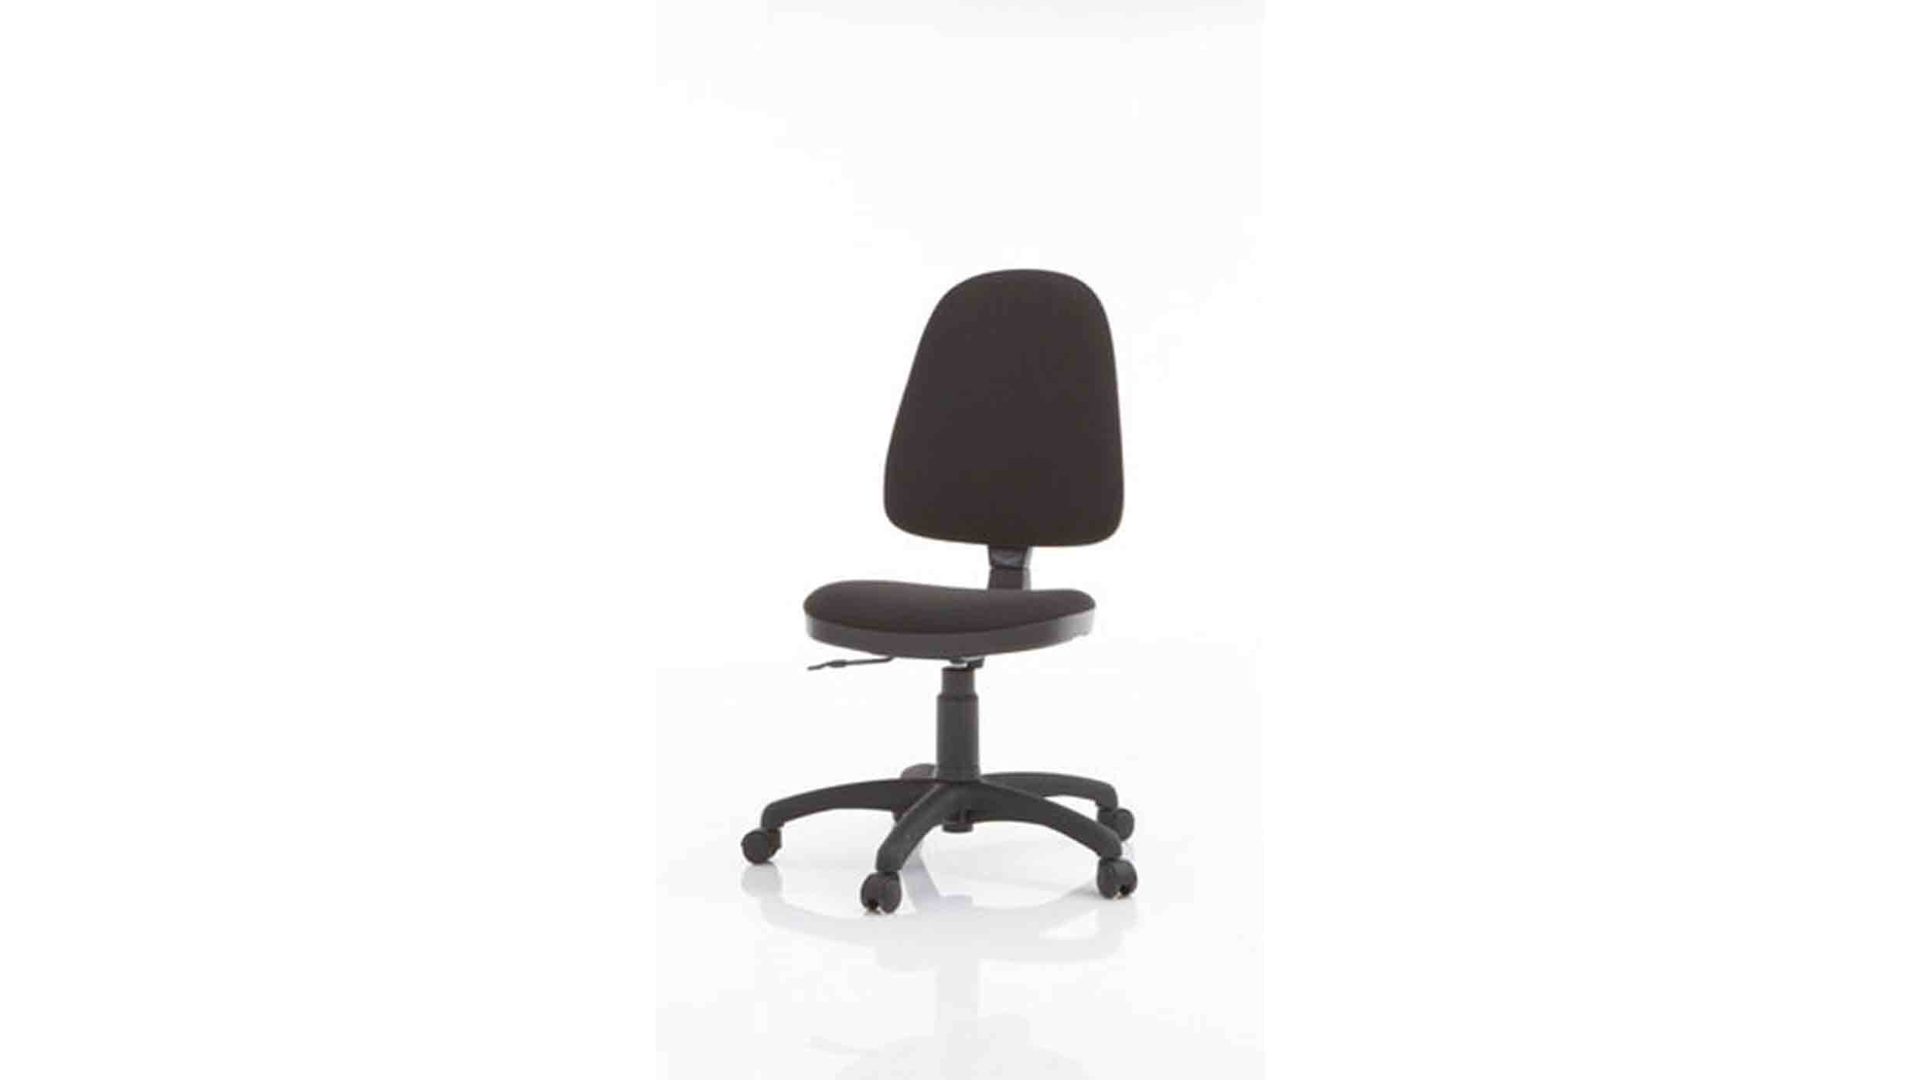 Drehstuhl Nowy styl aus Stoff in Schwarz Drehstuhl als Büromöbel mit hohem Sitzkomfort schwarzer Bezug Oban & schwarzes Fußkreuz